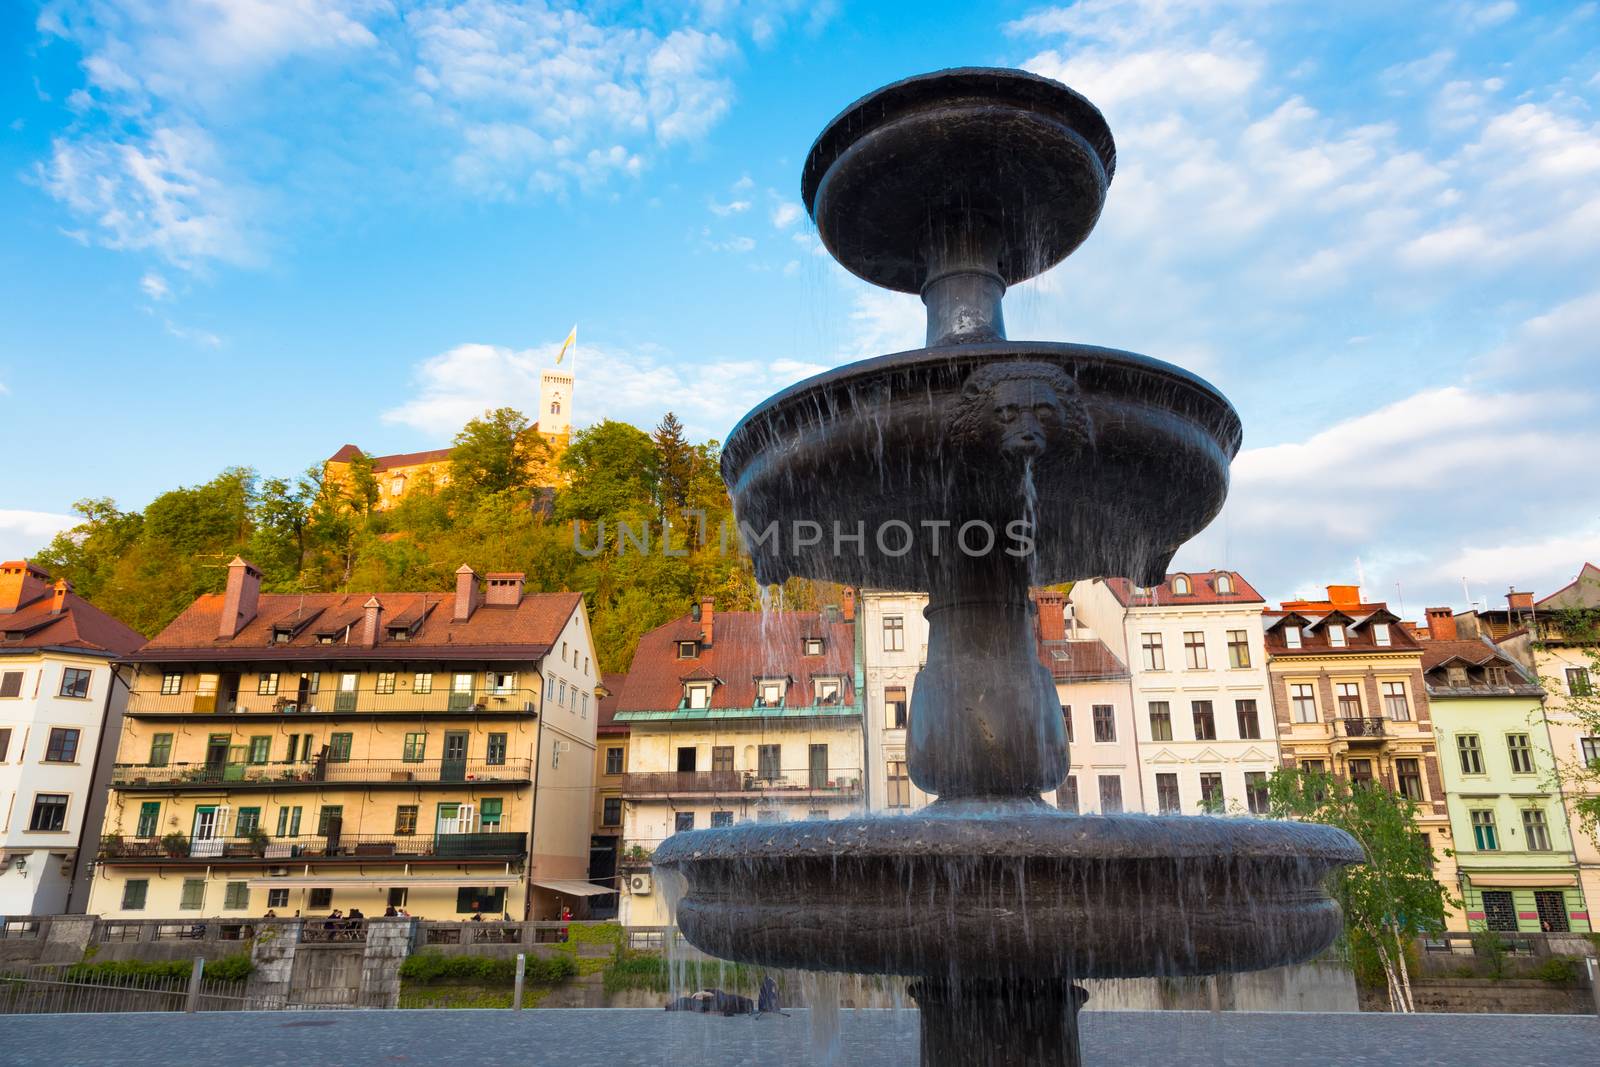 Medieval Ljubljana, capital of Slovenia, Europe. by kasto